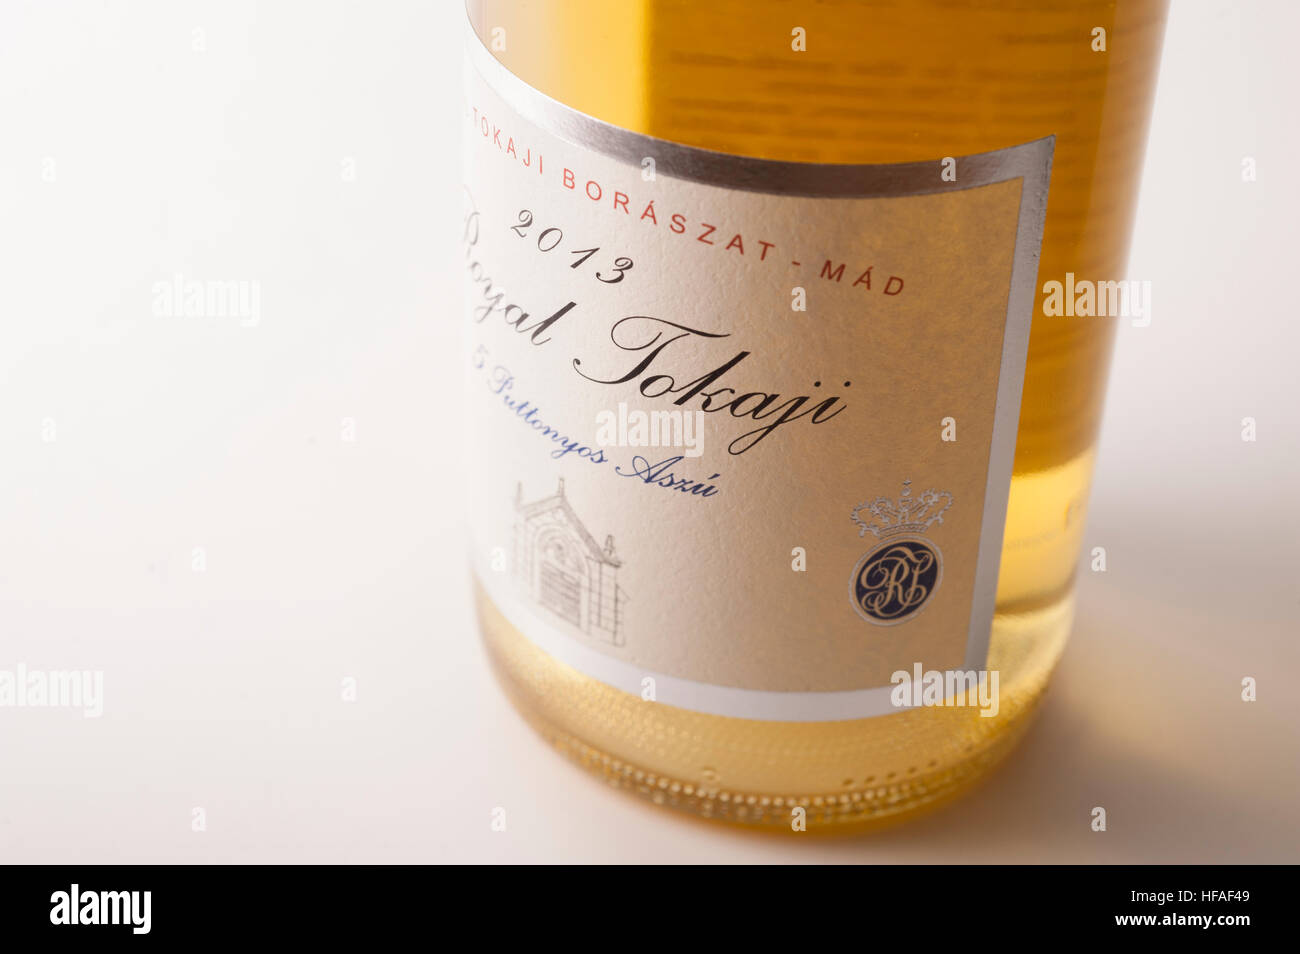 Aszu 5 puttonyos 2013 Tokai, étiquette de vin de la région viticole de Tokaj Hongrie Banque D'Images